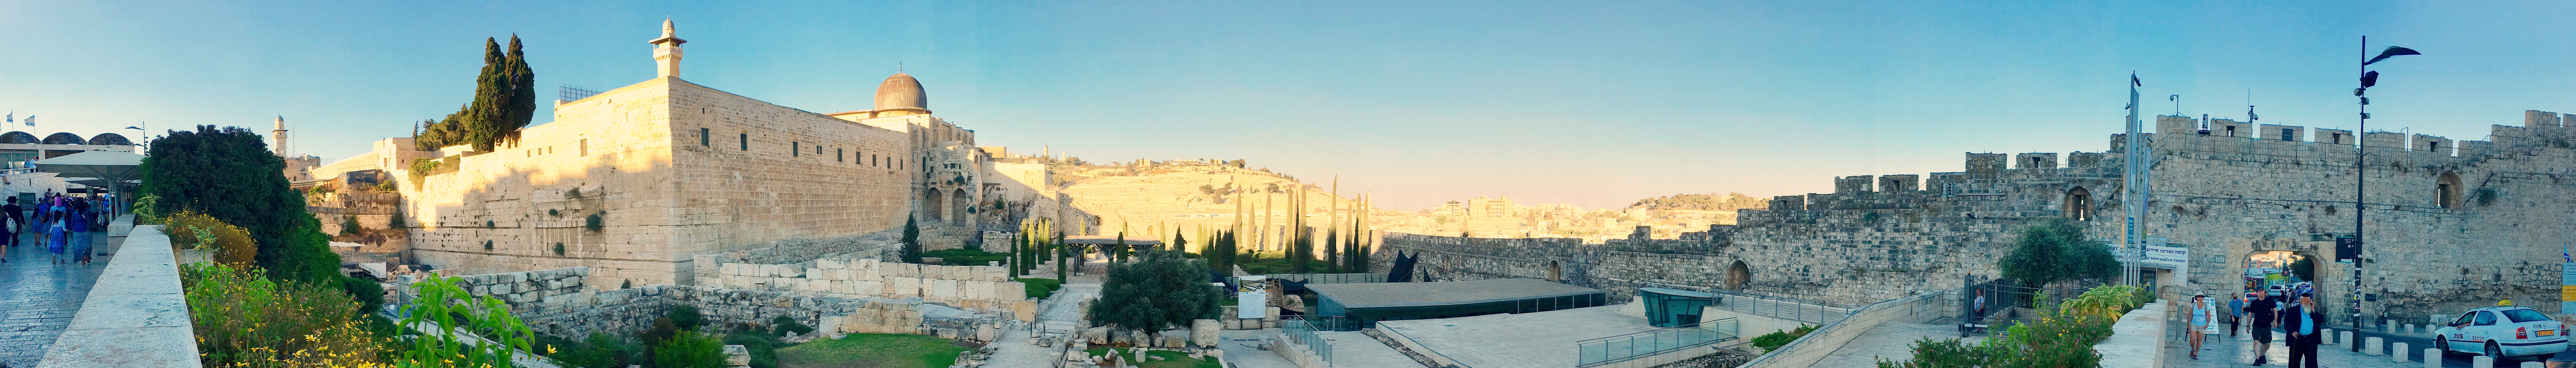 Western Wall and Al-Aqsa Mosque Jerusalem Israel